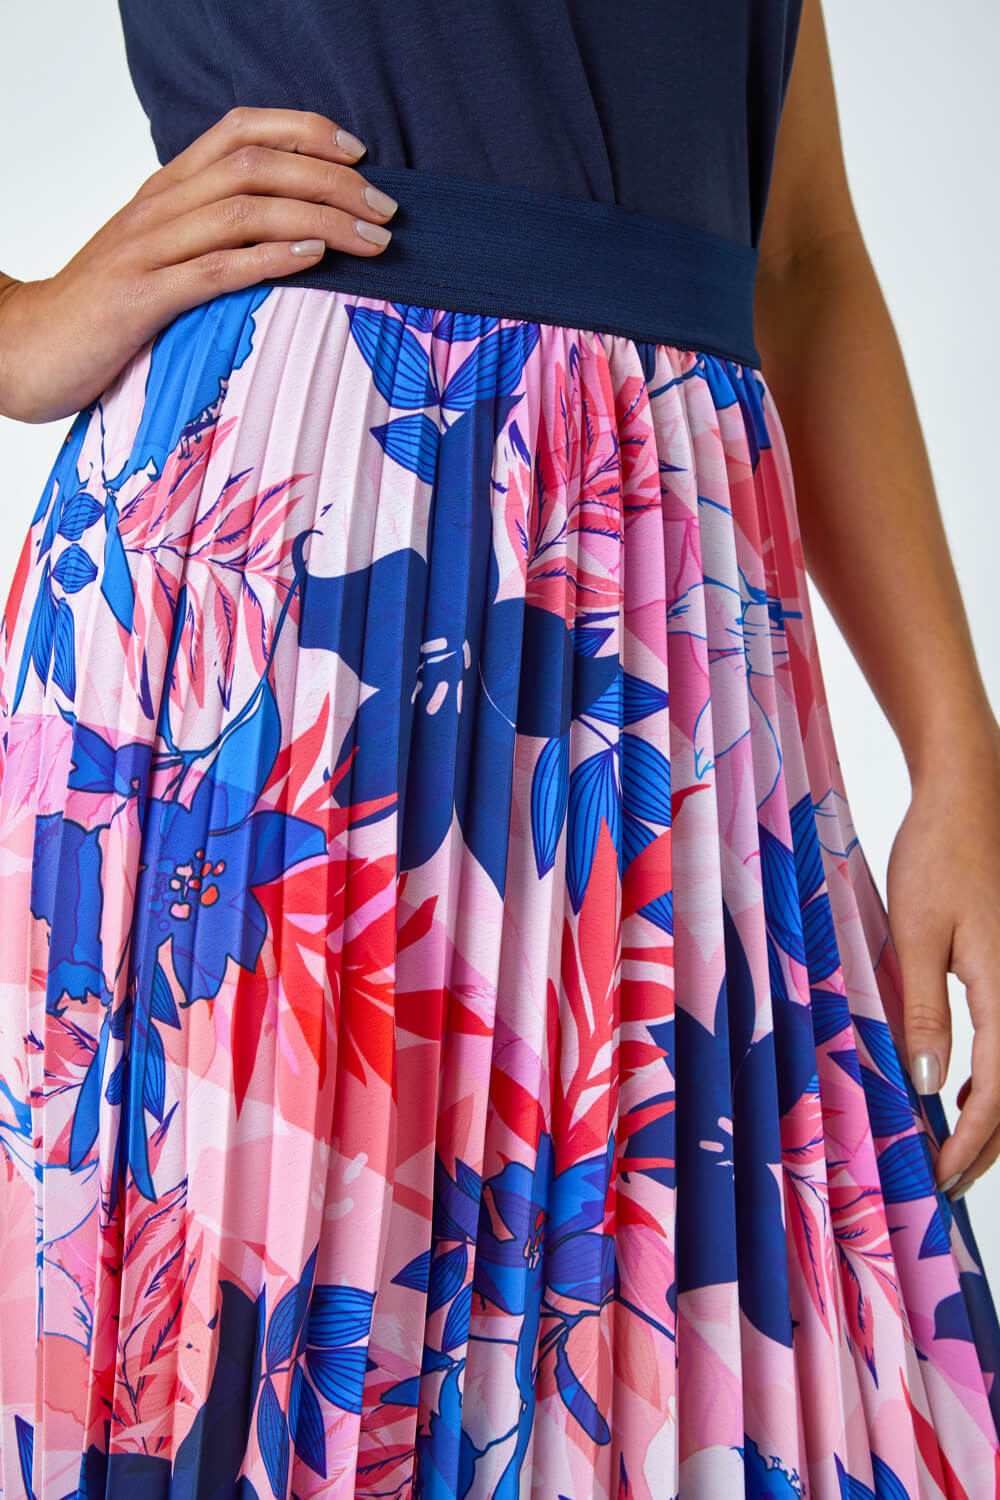 PINK Petite Pleated Floral Midi Skirt, Image 5 of 5